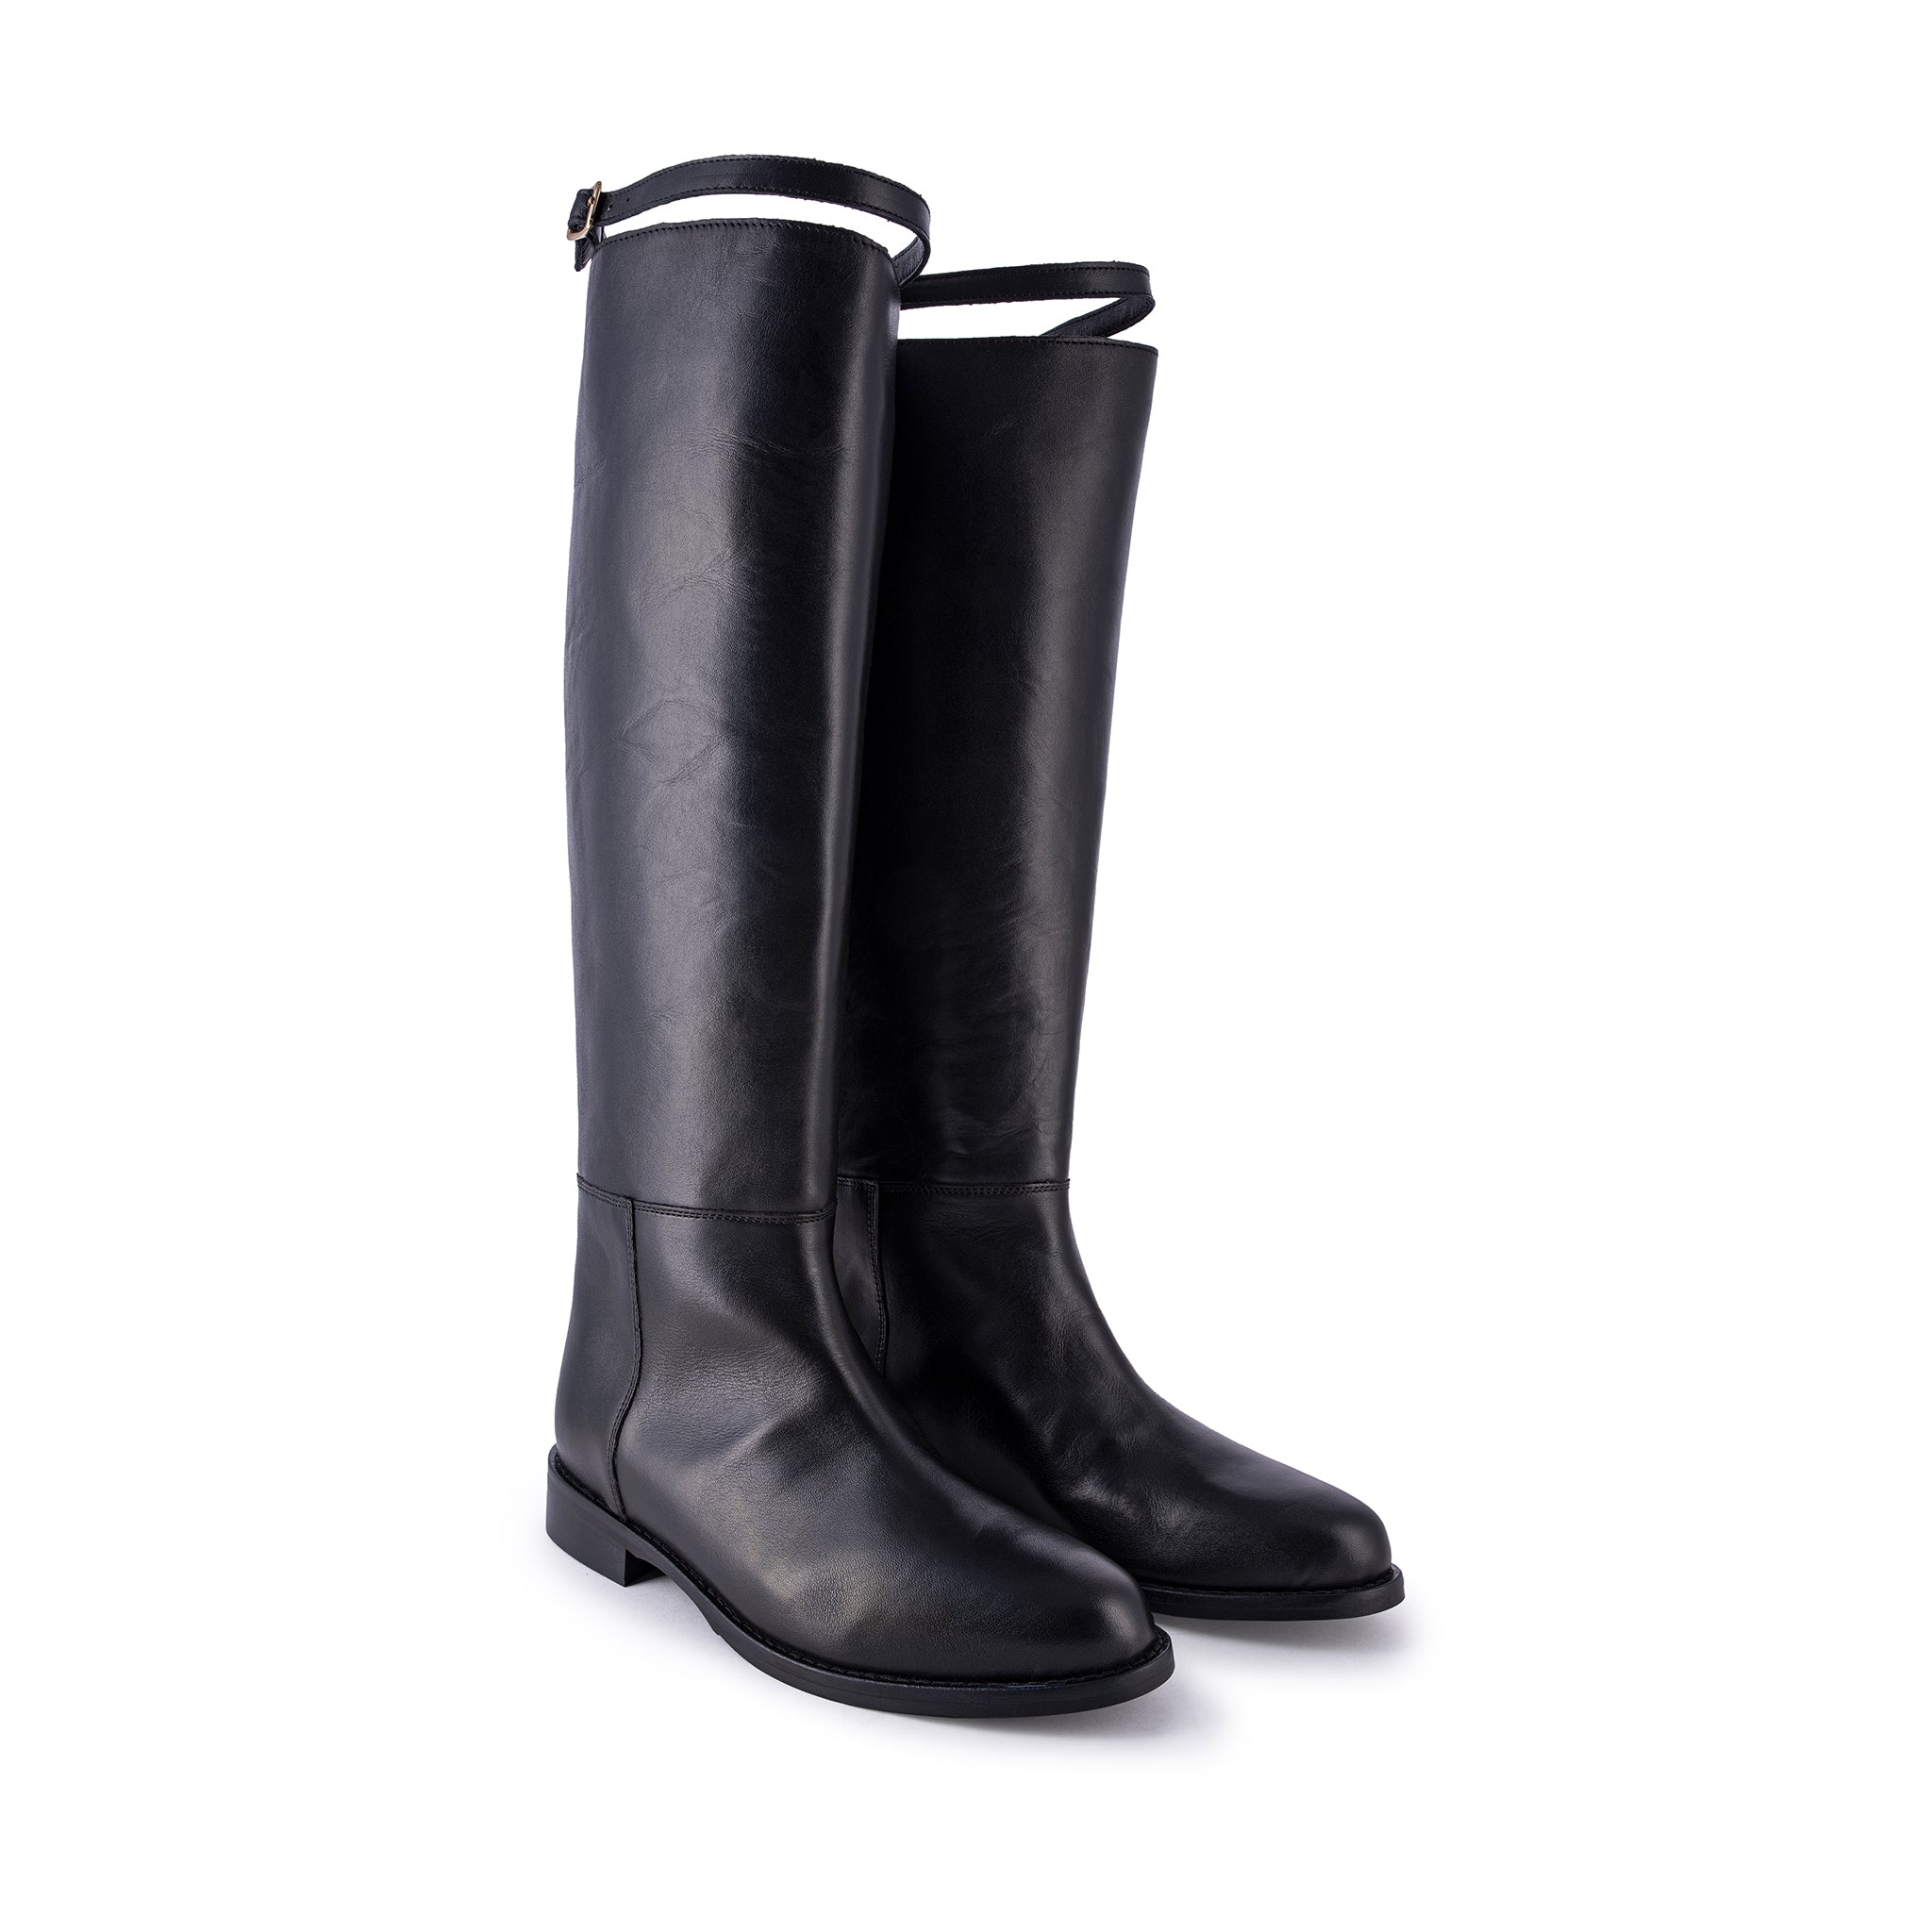 Oscar Black Strap High Boots OSCAR-CINTURINO-VITELLO - 2